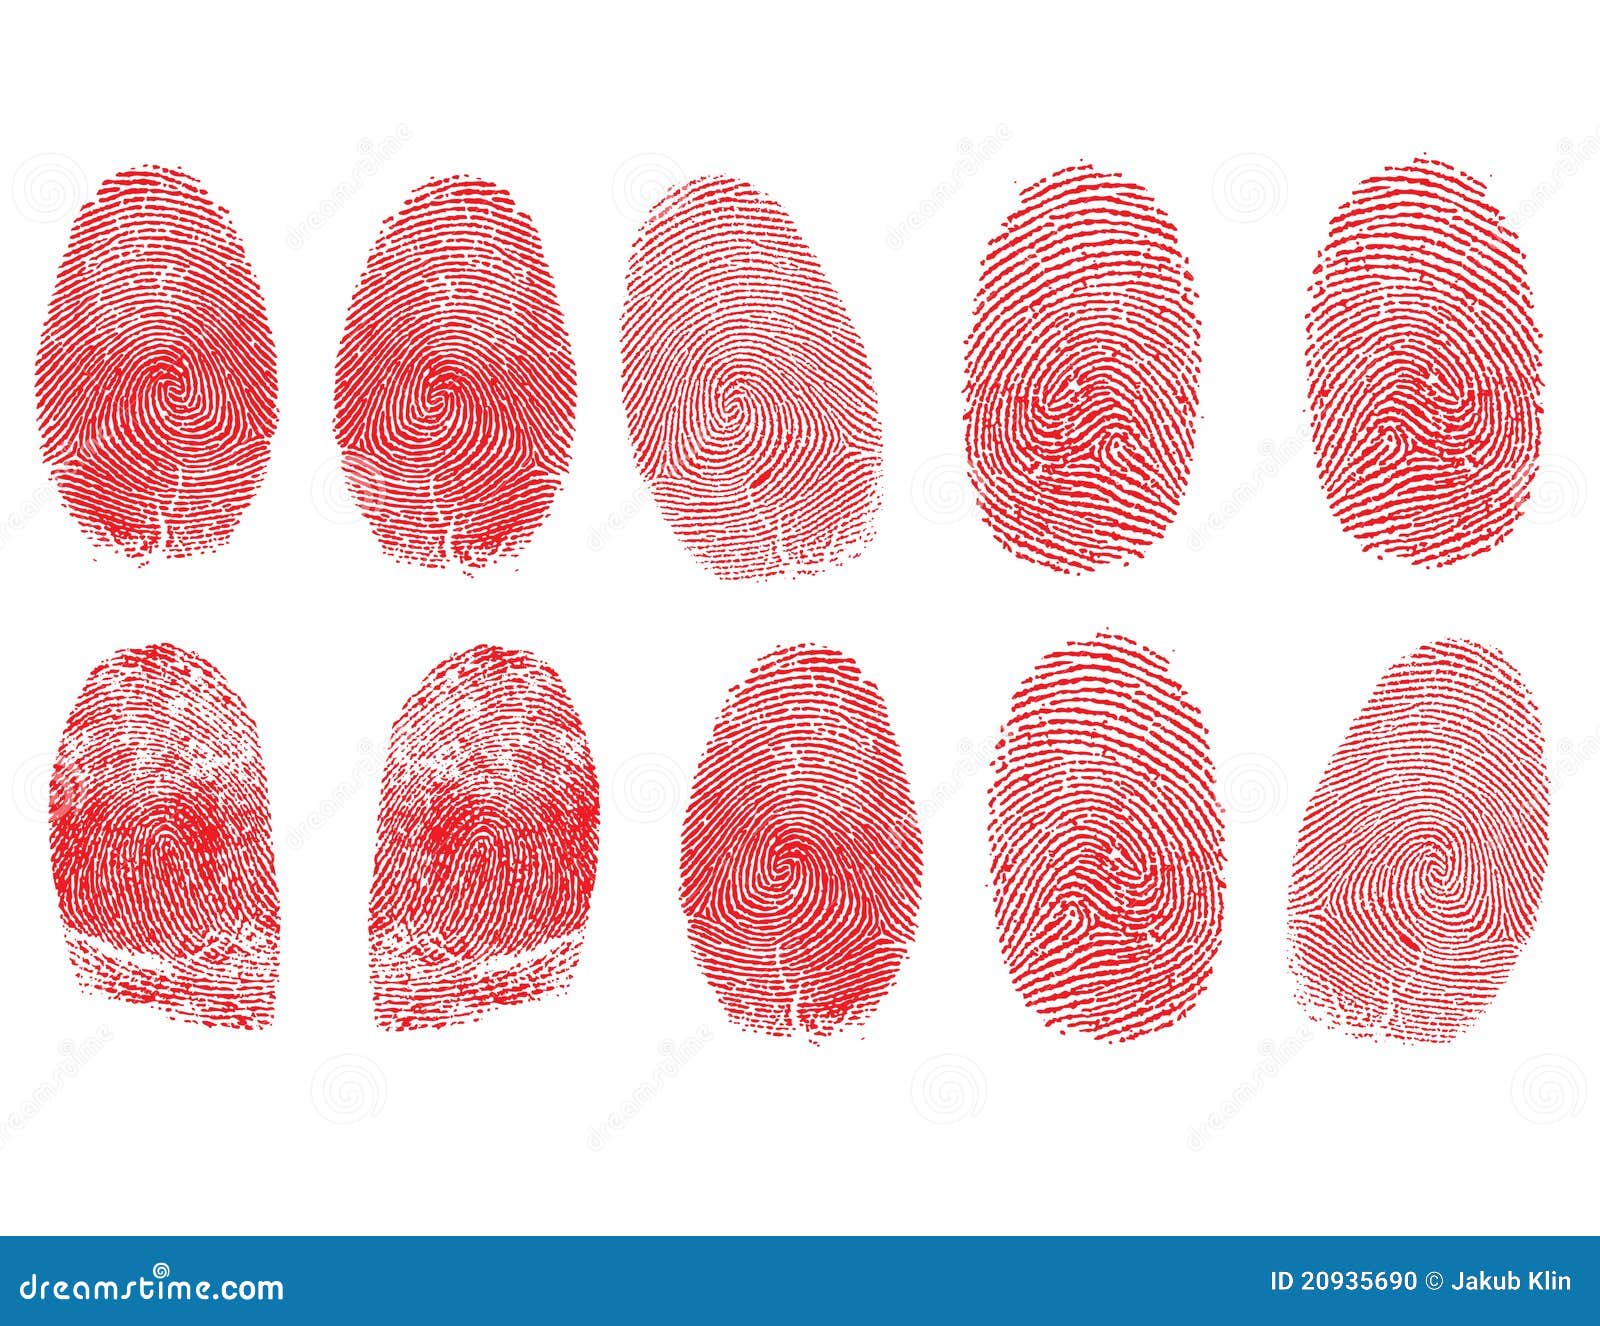 set of fingerprints